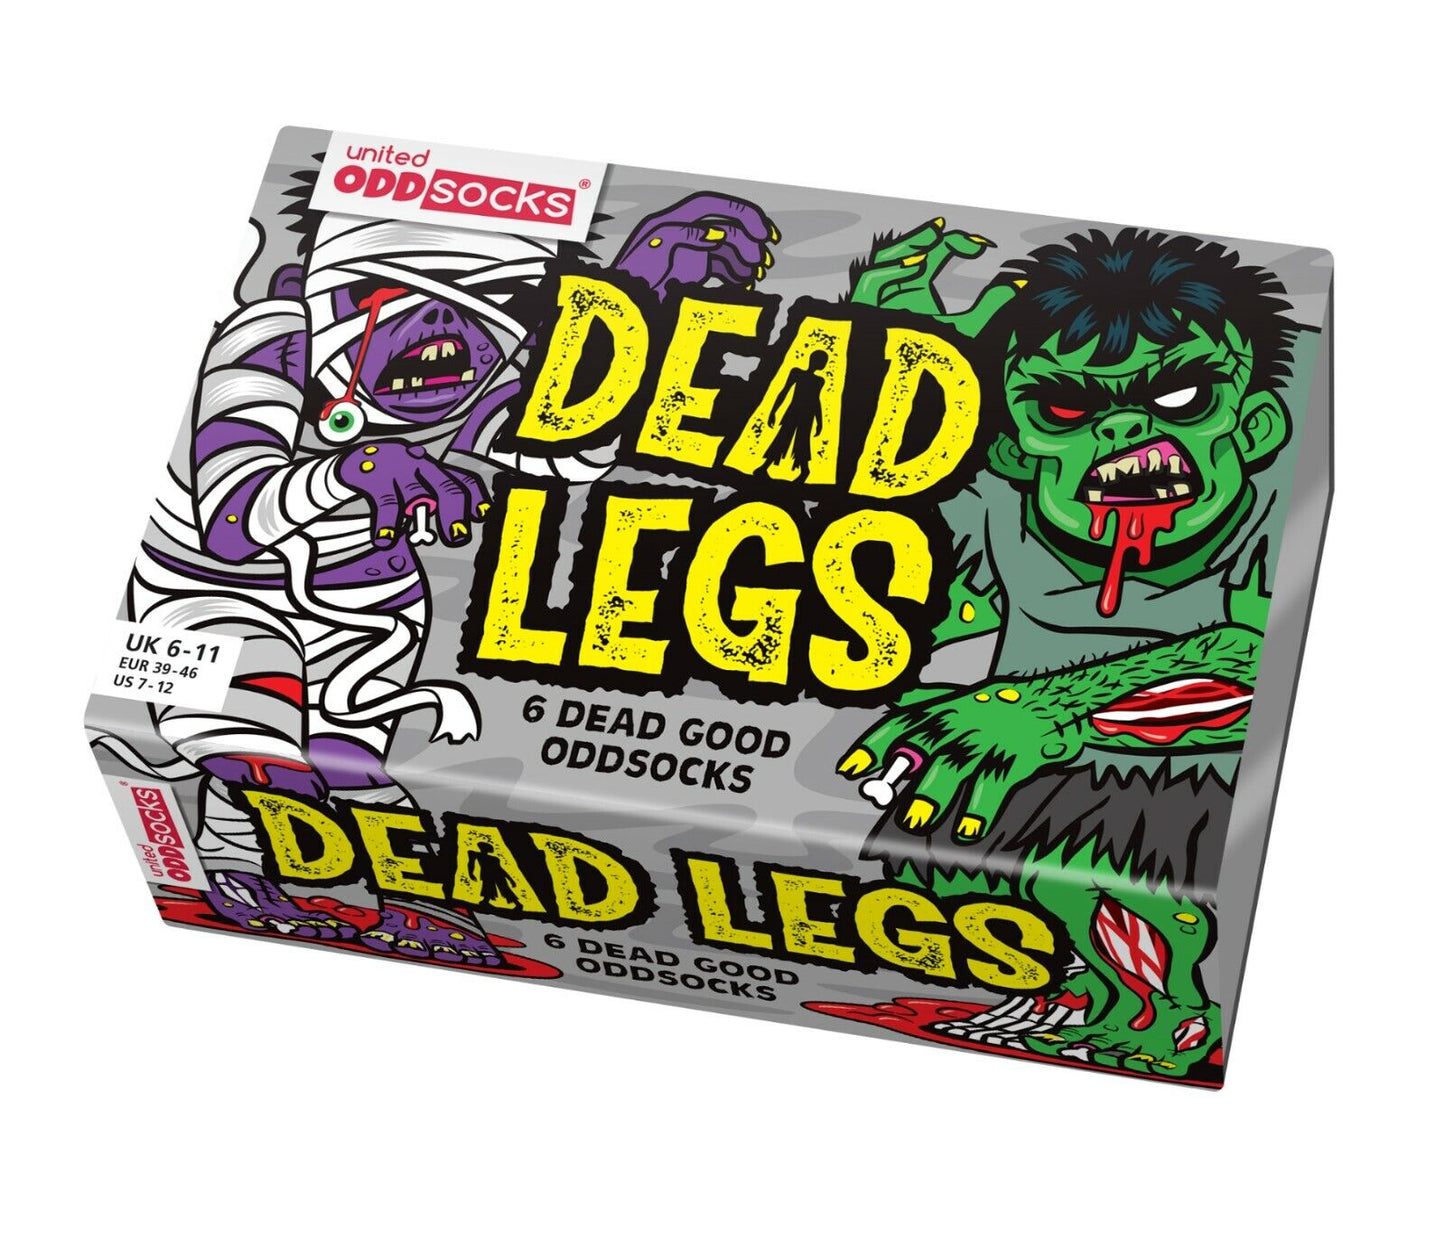 United Oddsocks The Dead Legs 6 Odd Socks Gift Box - Mens Size 6-11